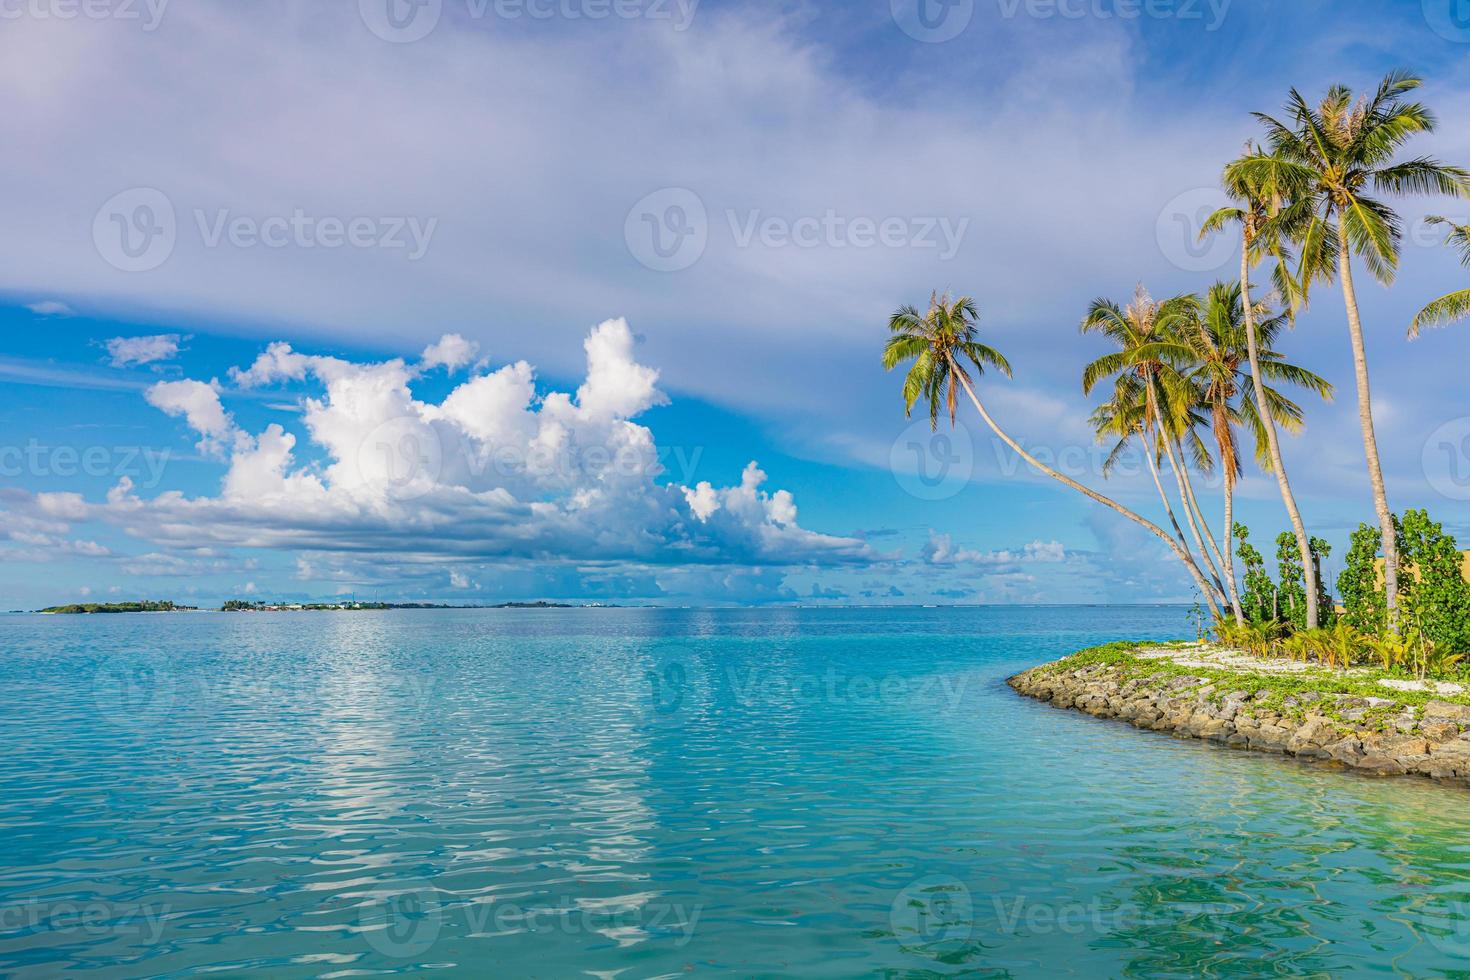 paradisíaca praia ensolarada com coqueiros e mar azul-turquesa. férias de verão e conceito de praia tropical. quebra-mar beira de águas típicas com palmeiras e mar calmo. Miami Beach Flórida Seascape foto